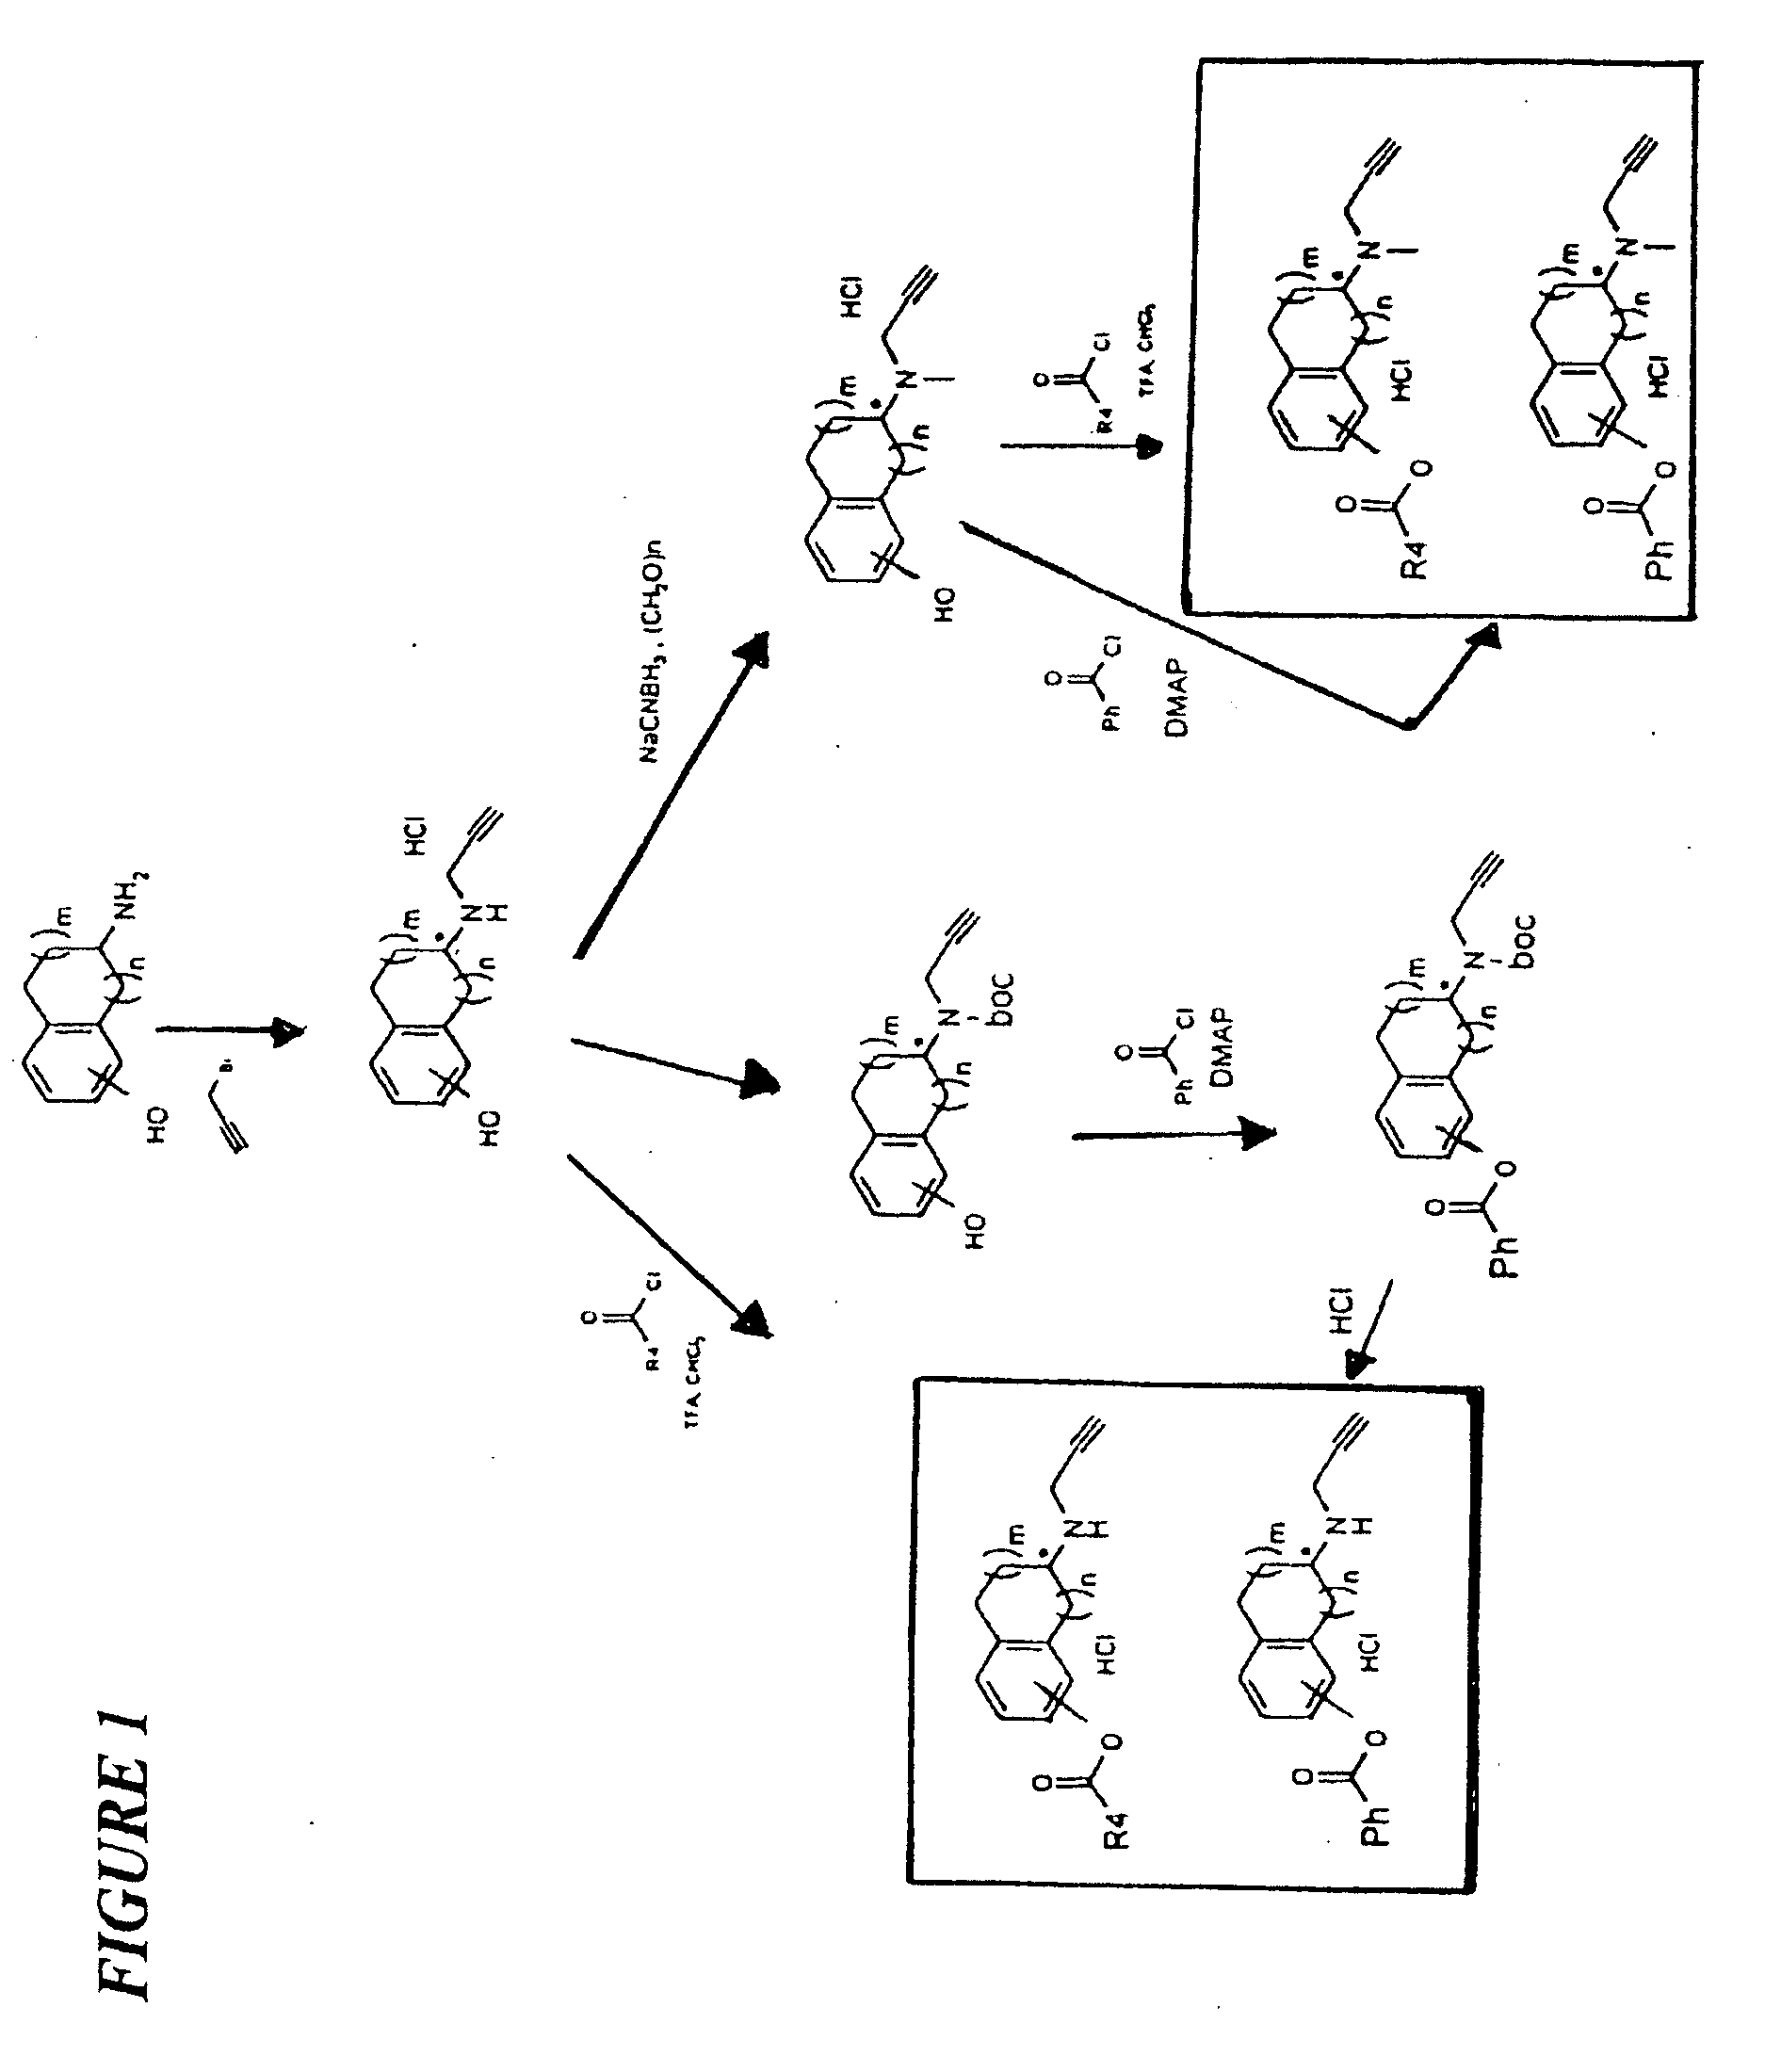 Propargylamino indan derivatives and propargylamino tetralin derivatives as brain-selective mao inhibitors